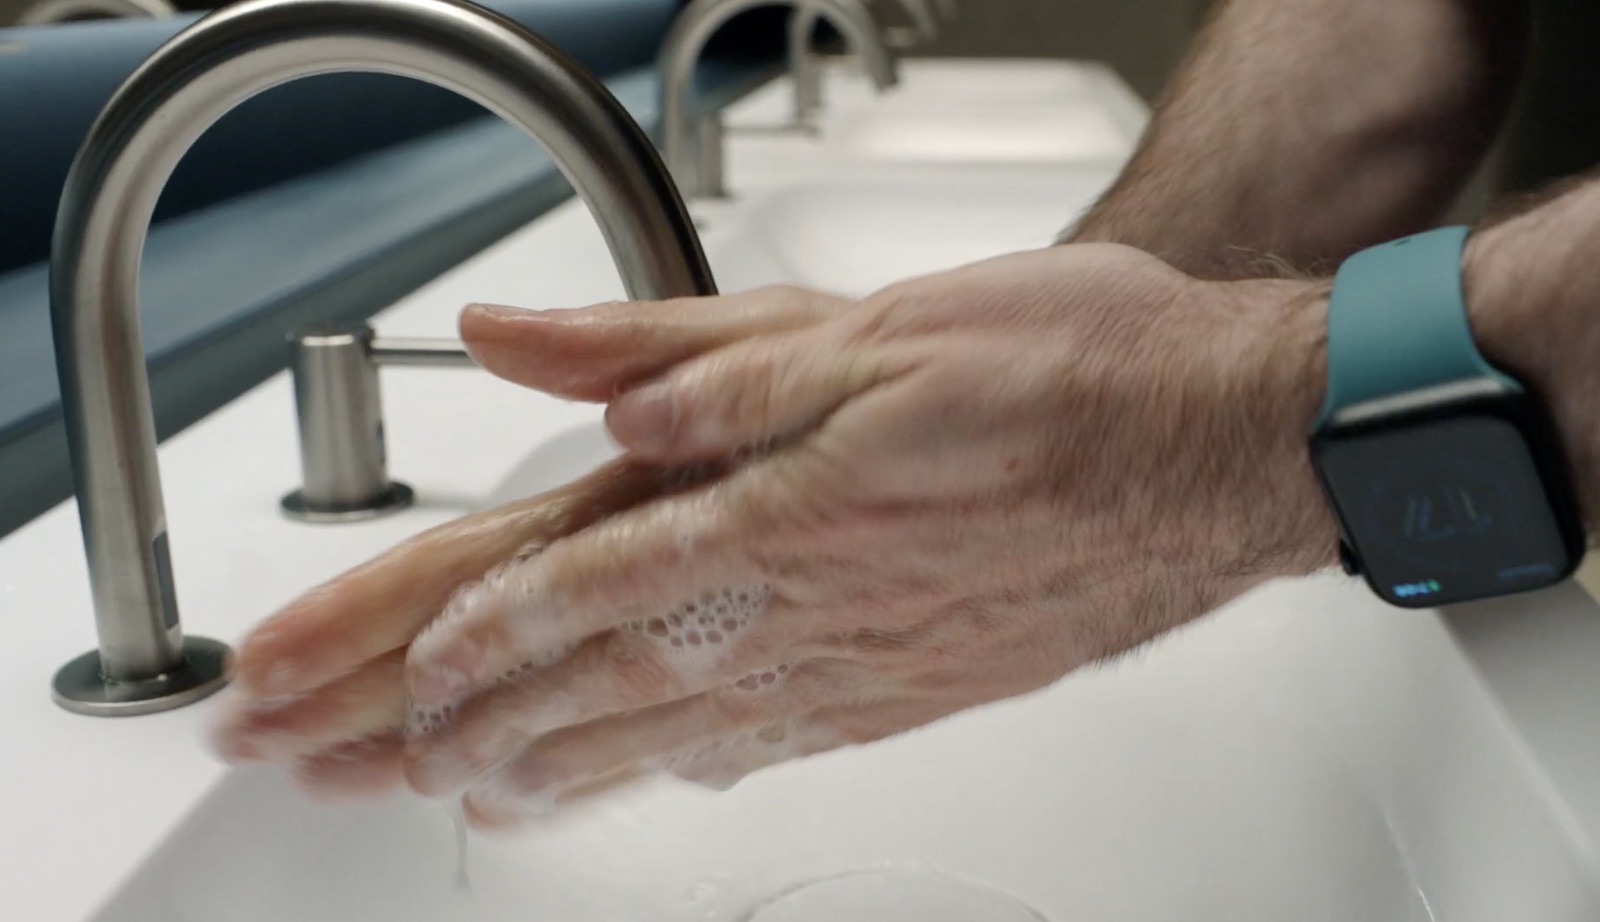 watchos7 hand washing